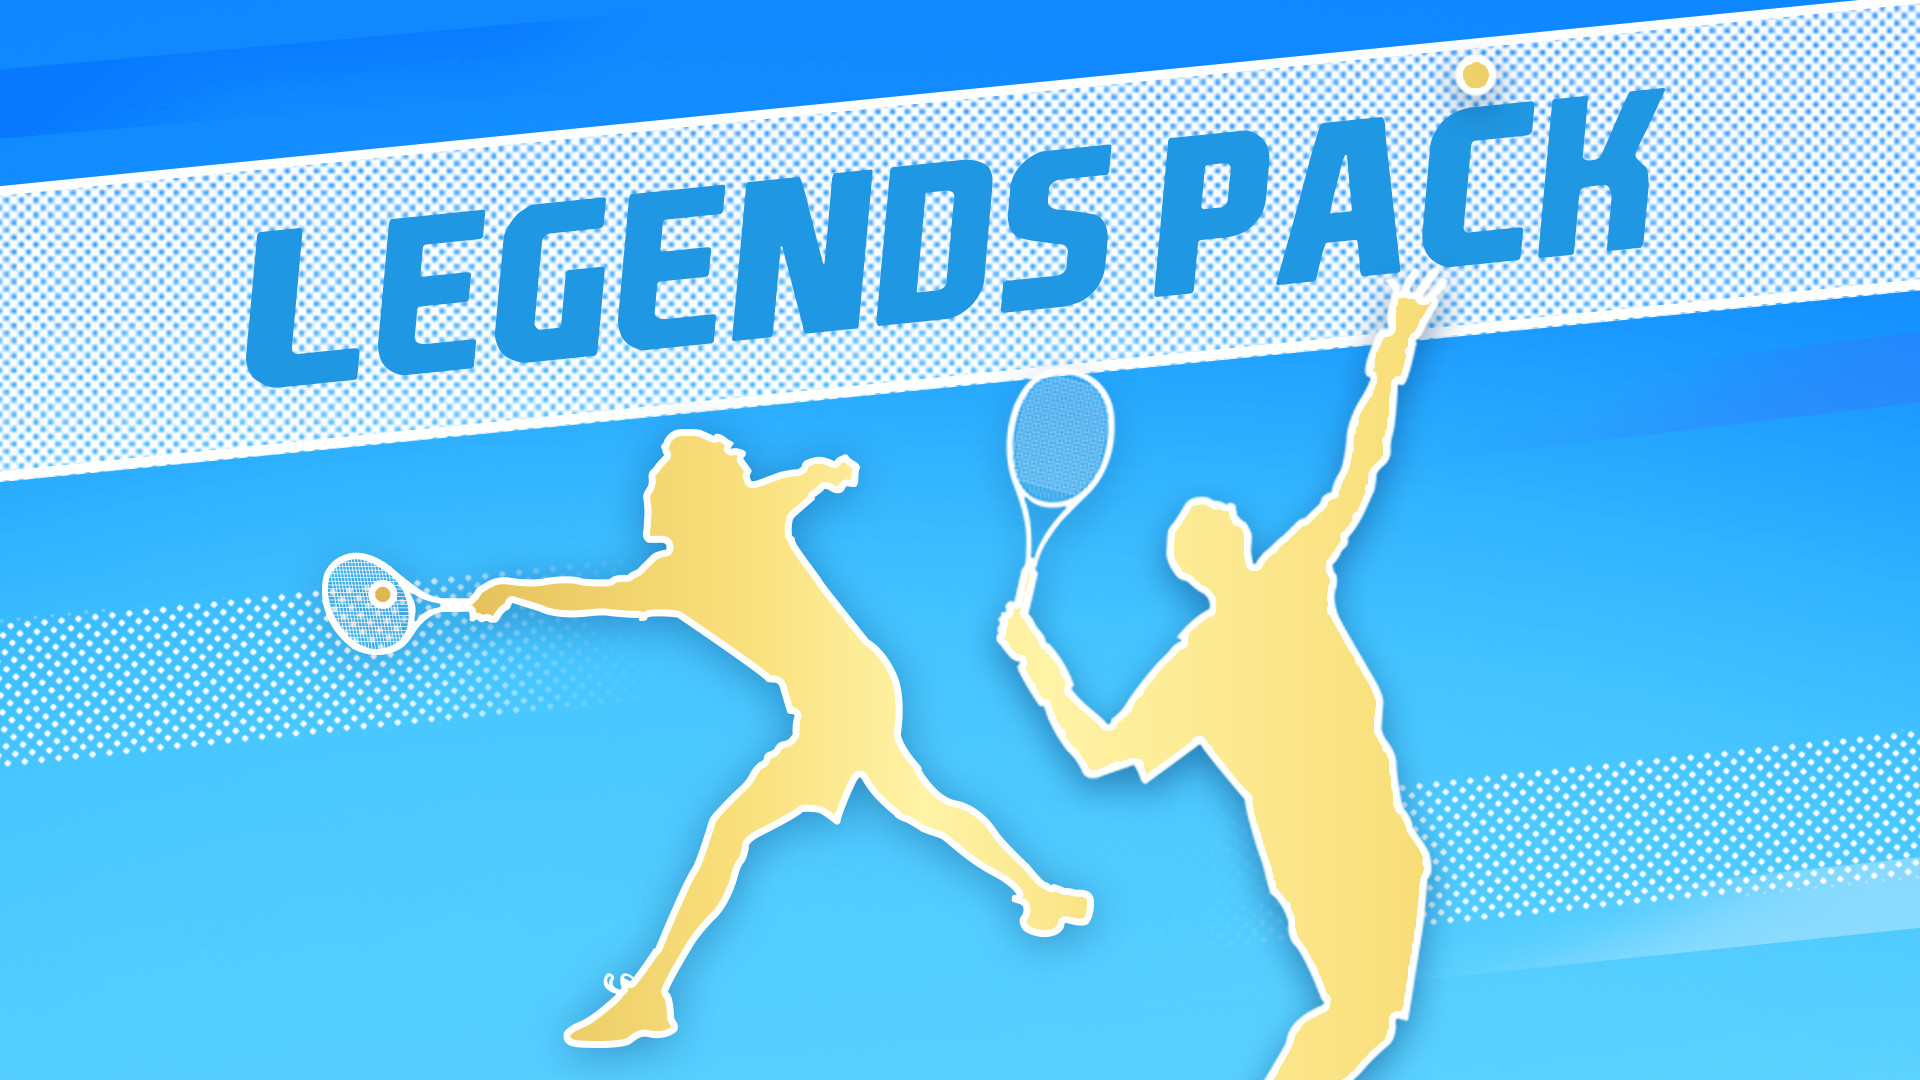 Tennis World Tour 2 Legends Pack